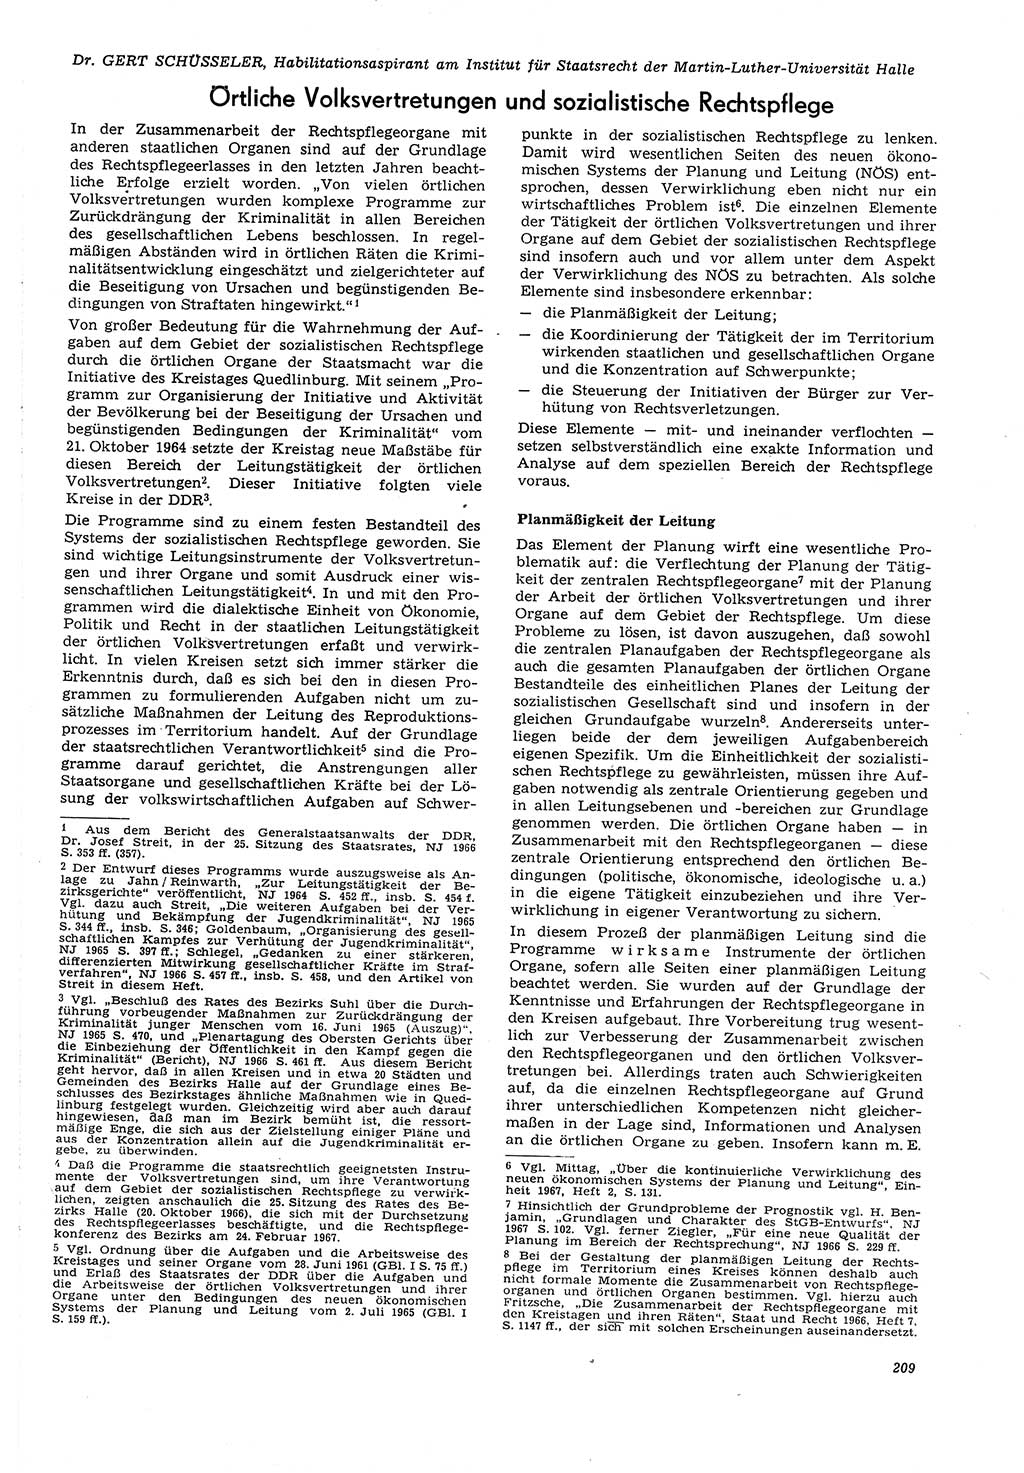 Neue Justiz (NJ), Zeitschrift für Recht und Rechtswissenschaft [Deutsche Demokratische Republik (DDR)], 21. Jahrgang 1967, Seite 209 (NJ DDR 1967, S. 209)